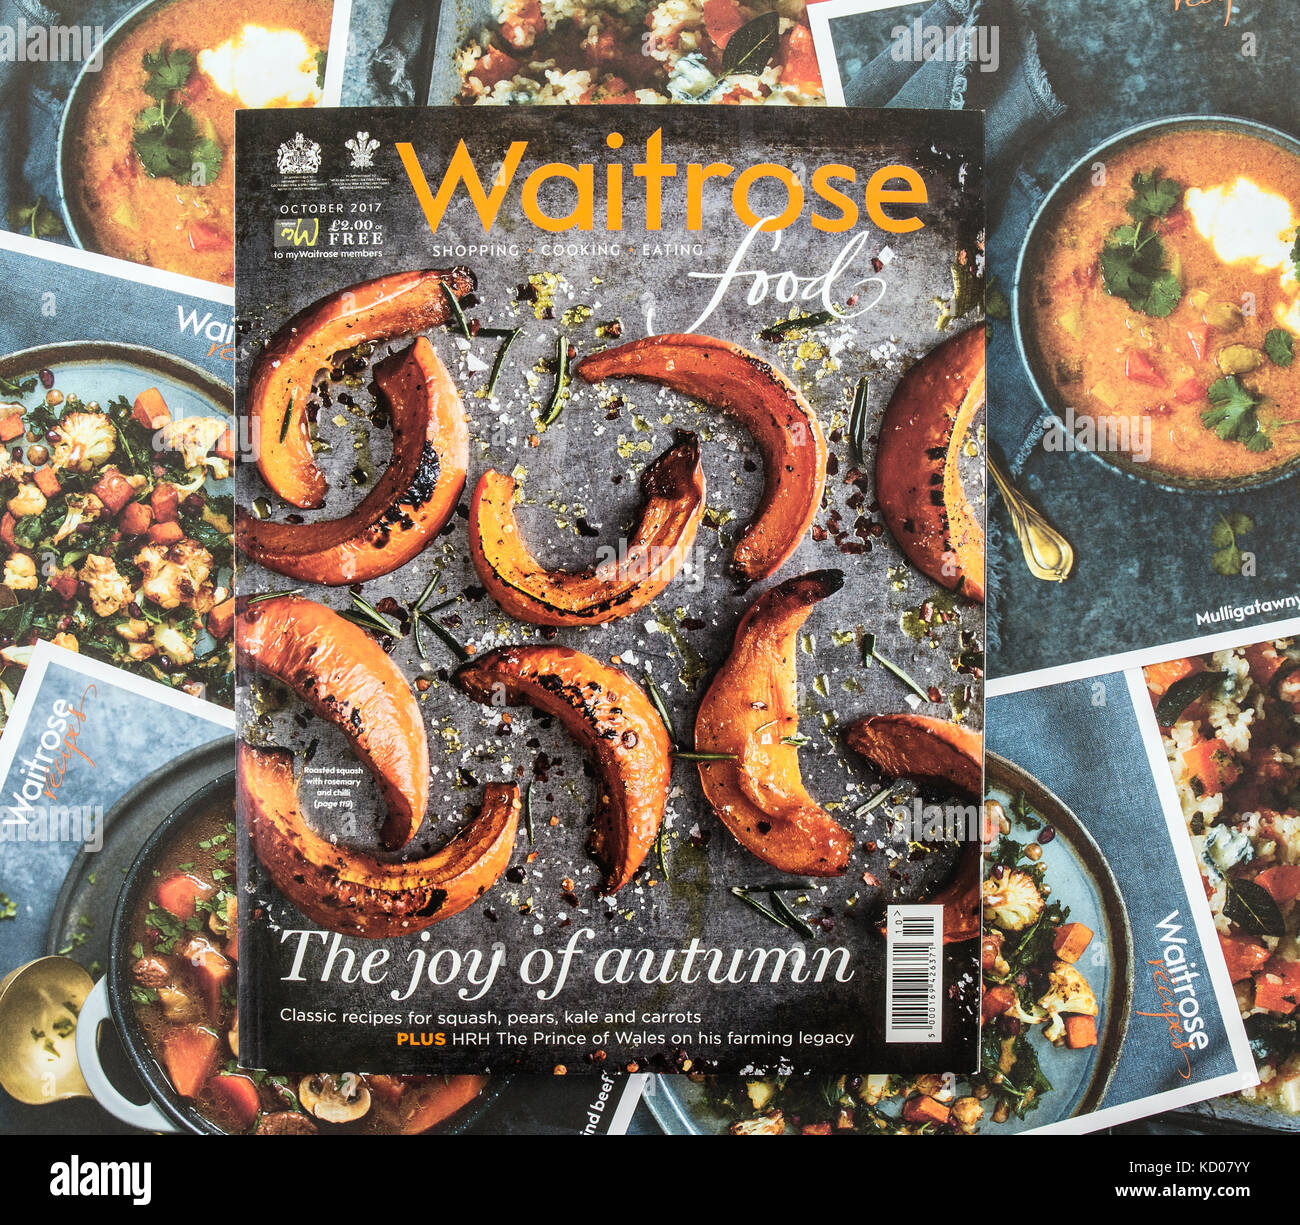 SWINDON, UK - OCTOBER 8, 2017: Waitrose Autumn Food Magazine with Recipe cards Stock Photo